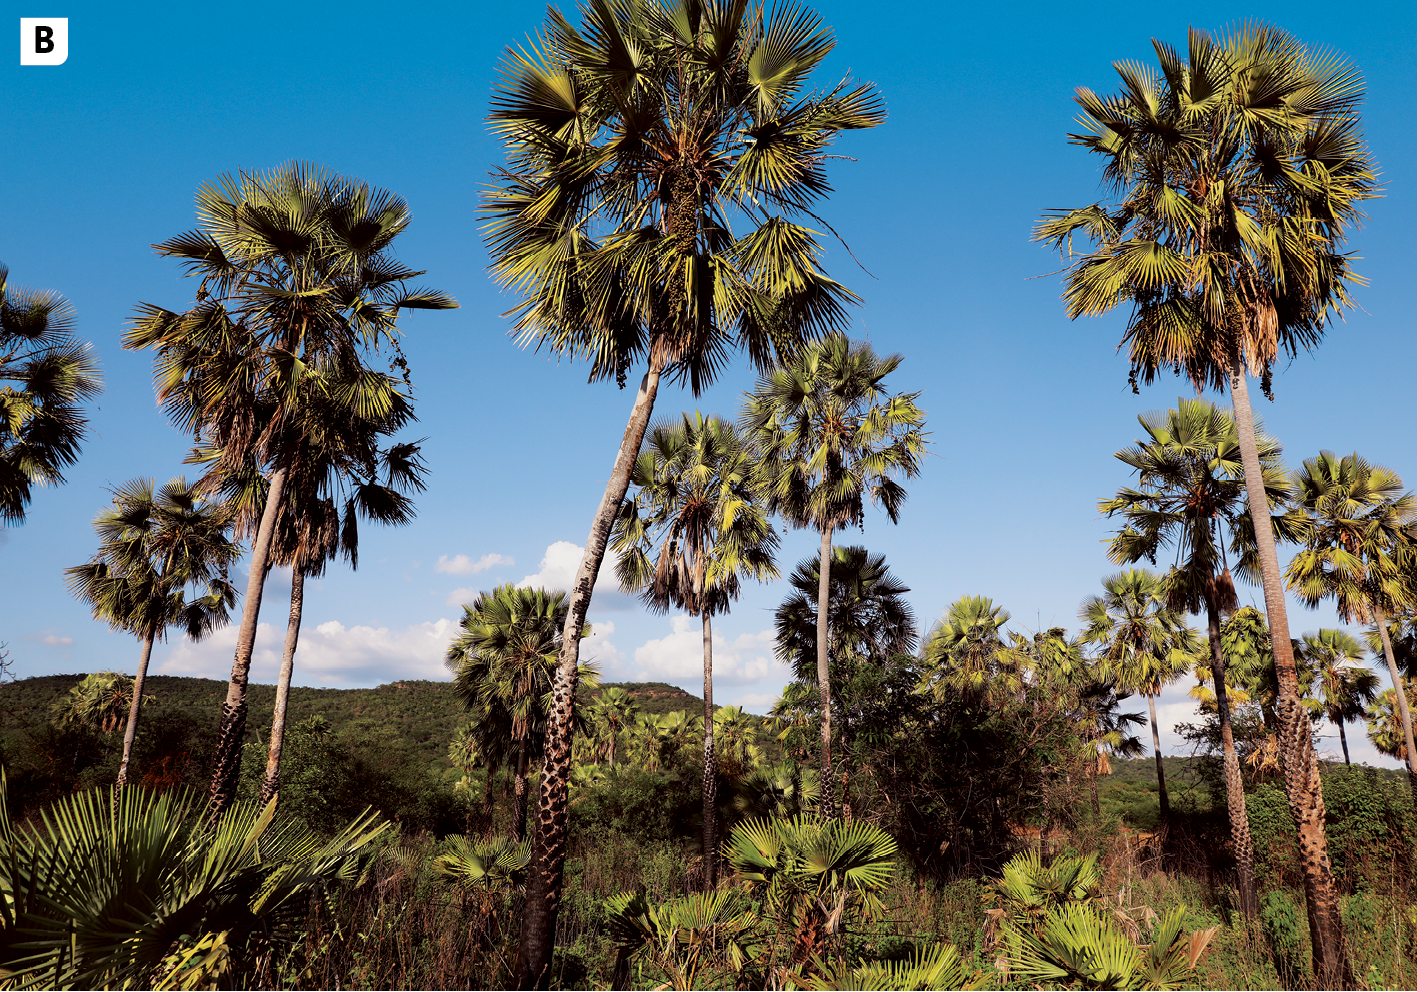 Fotografia B. Vista de uma área com muitas palmeiras e vegetação baixa. Ao fundo, céu azul.